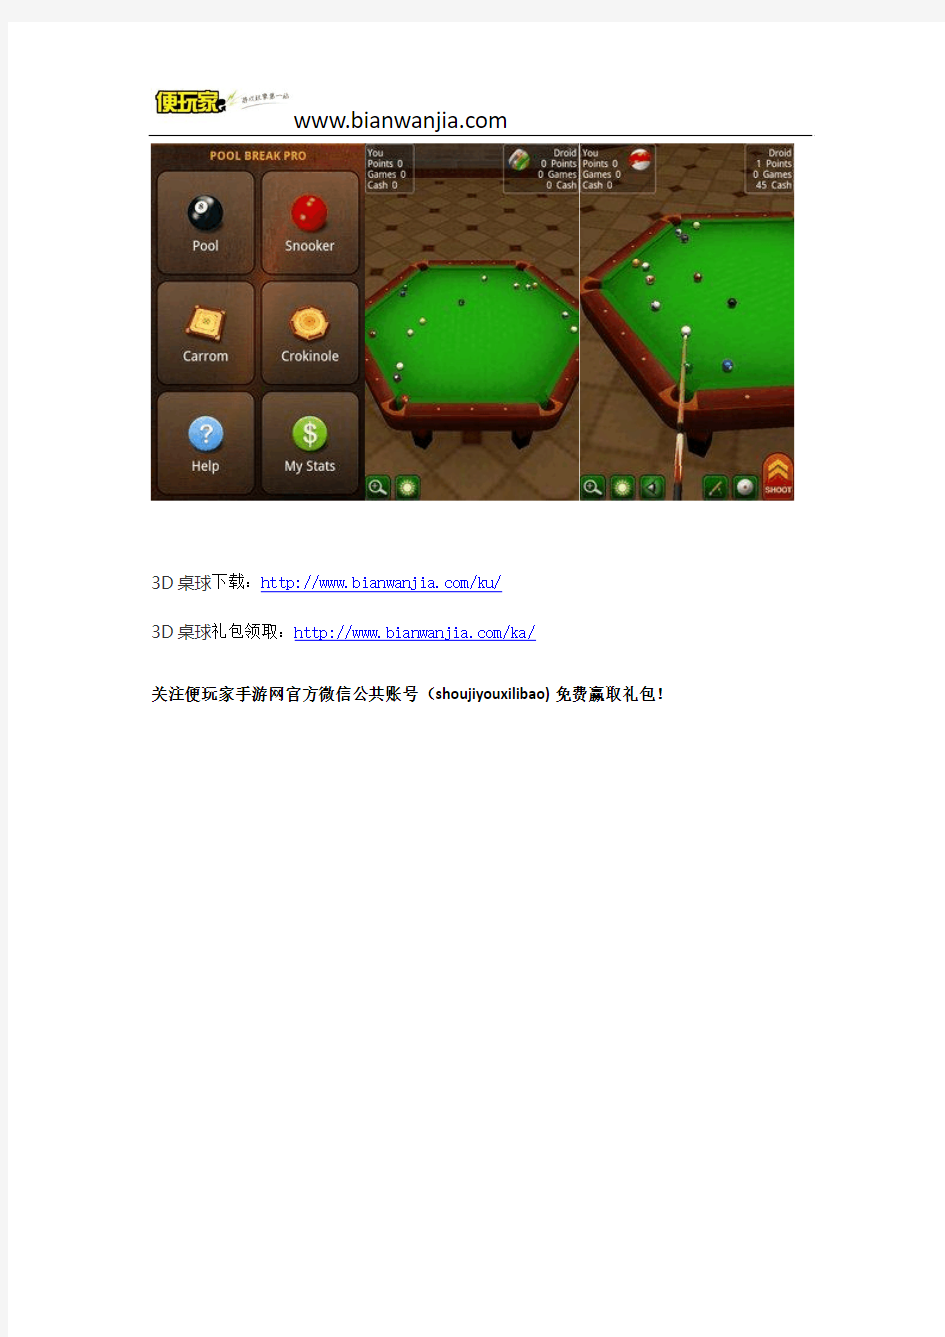 3D桌球 游戏下载 中文版 单机版